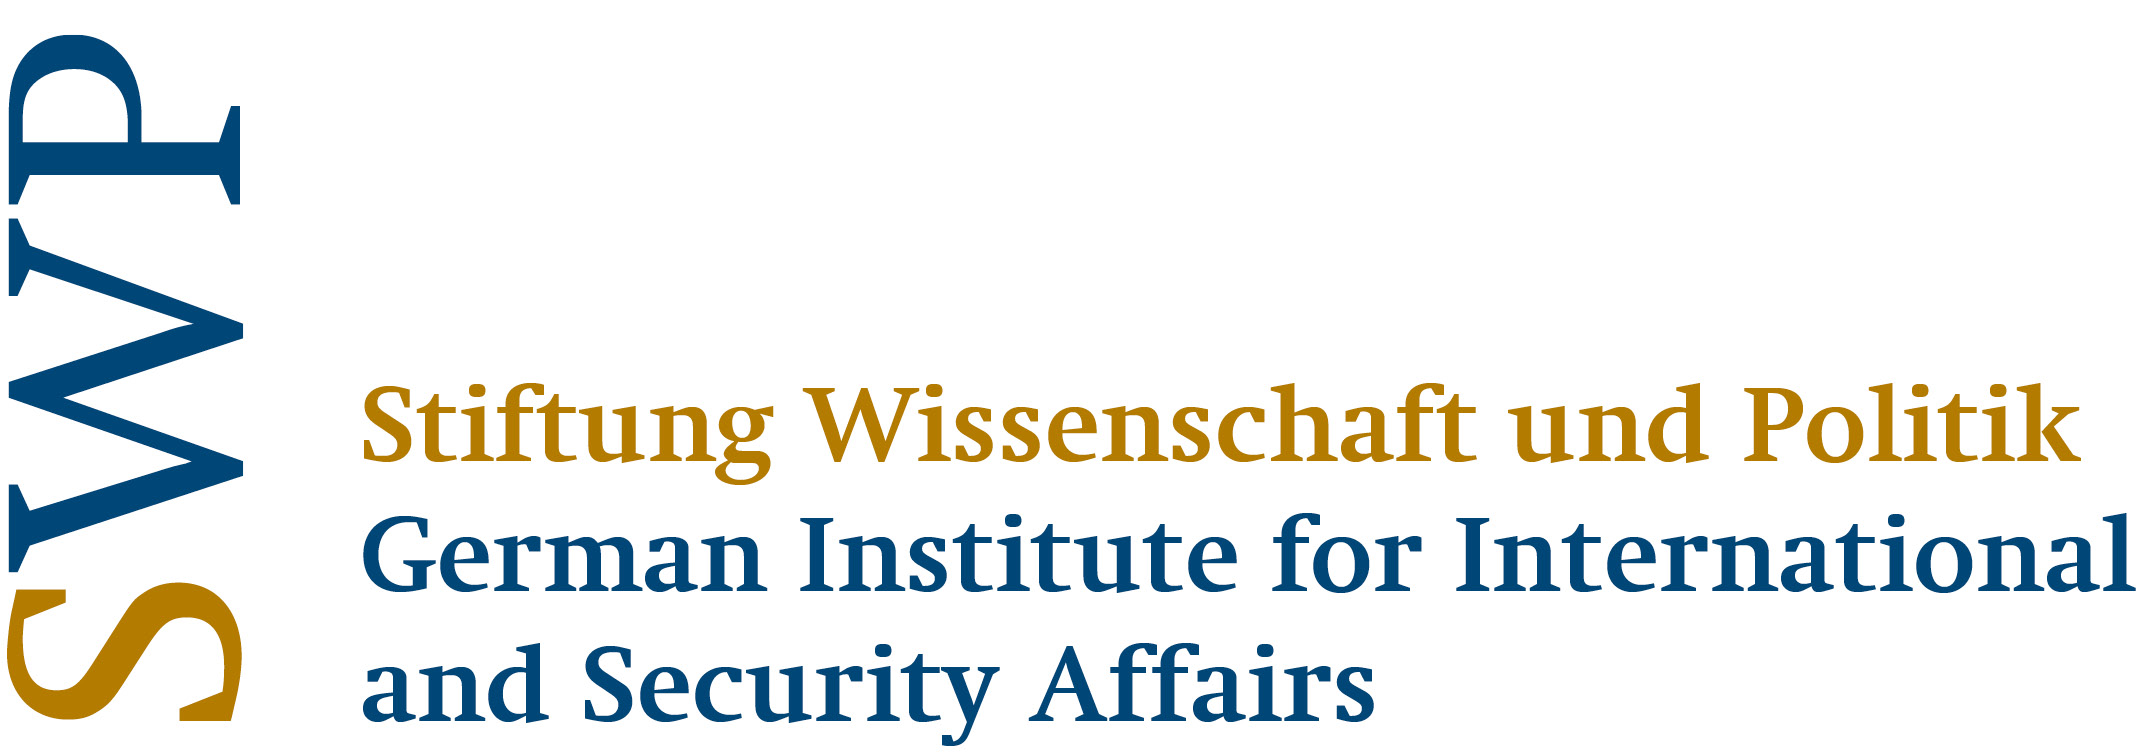 Logo of the Stiftung Wissenschaft und Politik